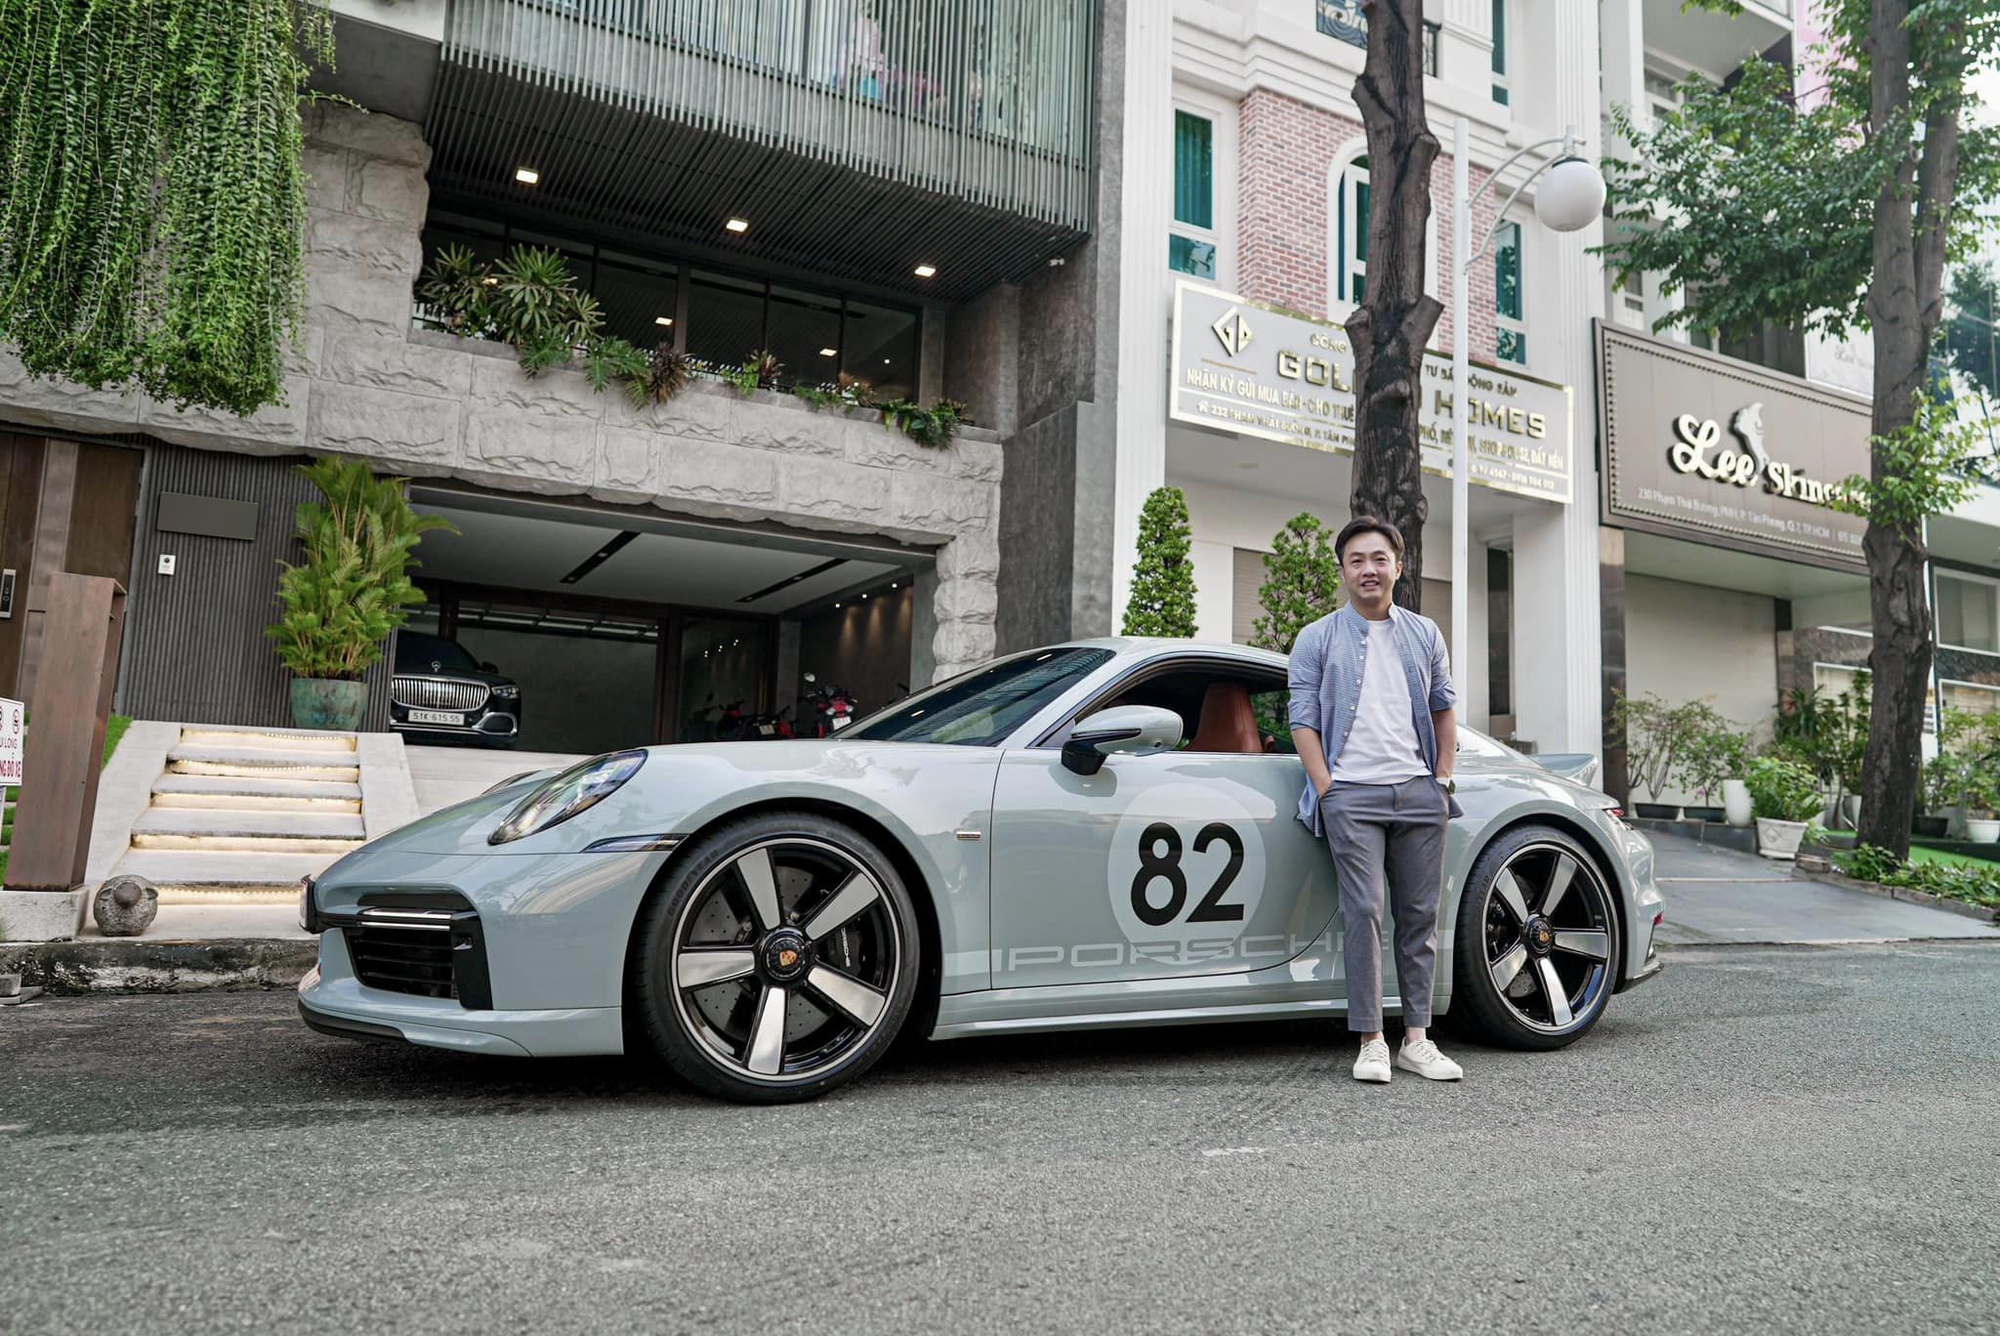 Cường Đô La ‘review’ Porsche 911 số sàn vừa mua giá hơn 19 tỷ đồng: ‘Lái thích, nhưng đi đường dài hơi đuối và ê ẩm chân’ - Ảnh 4.